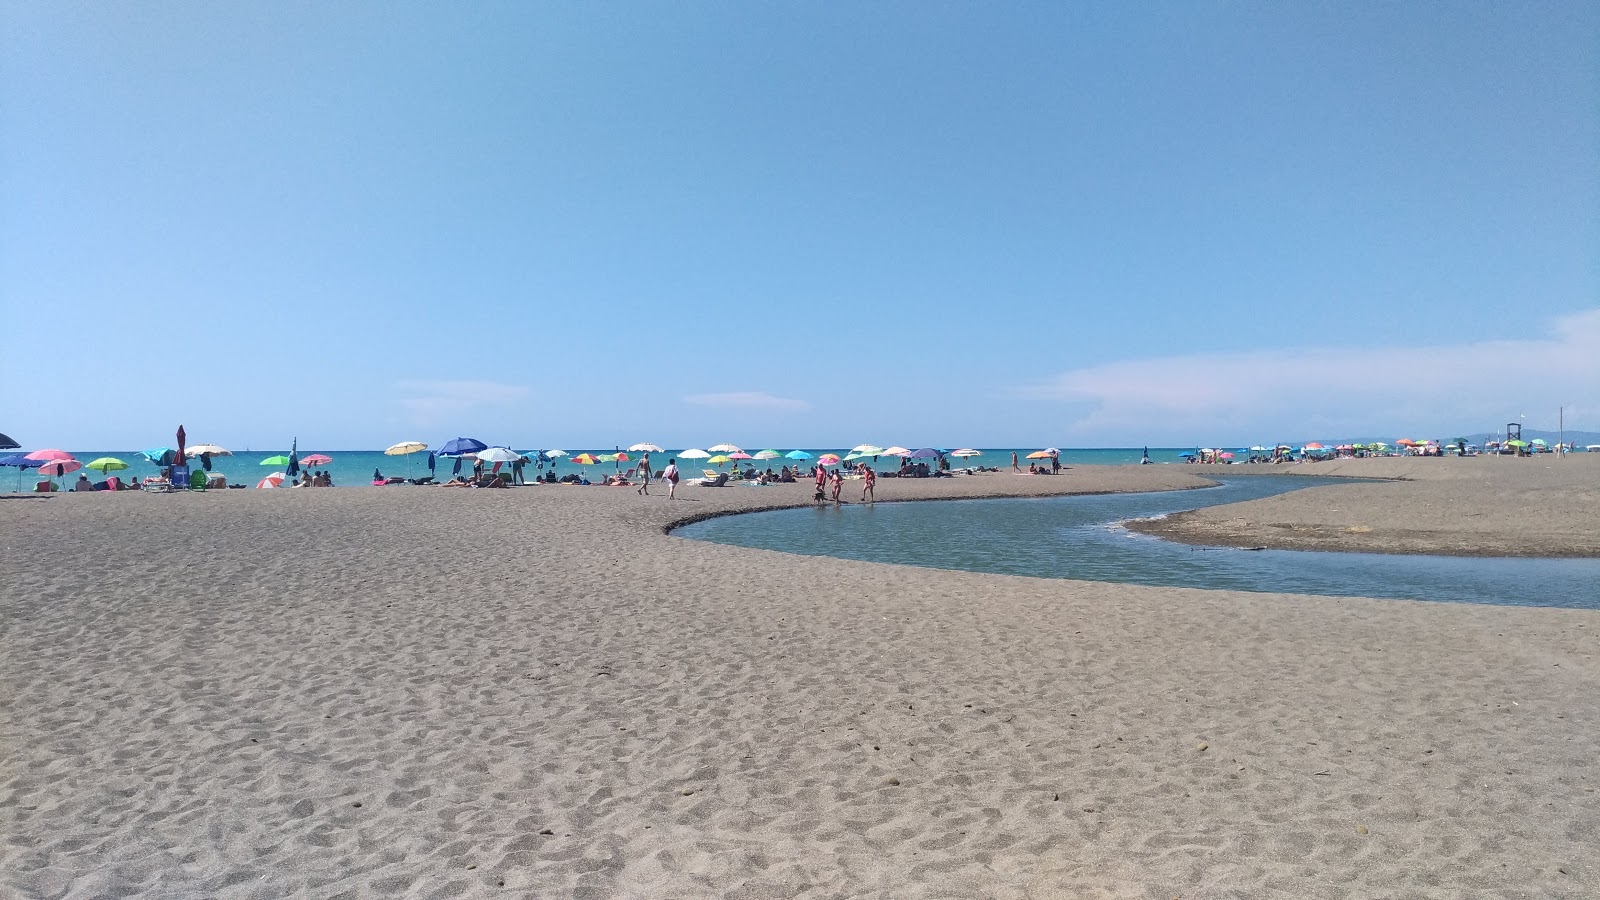 Photo de Etruria beach - endroit populaire parmi les connaisseurs de la détente